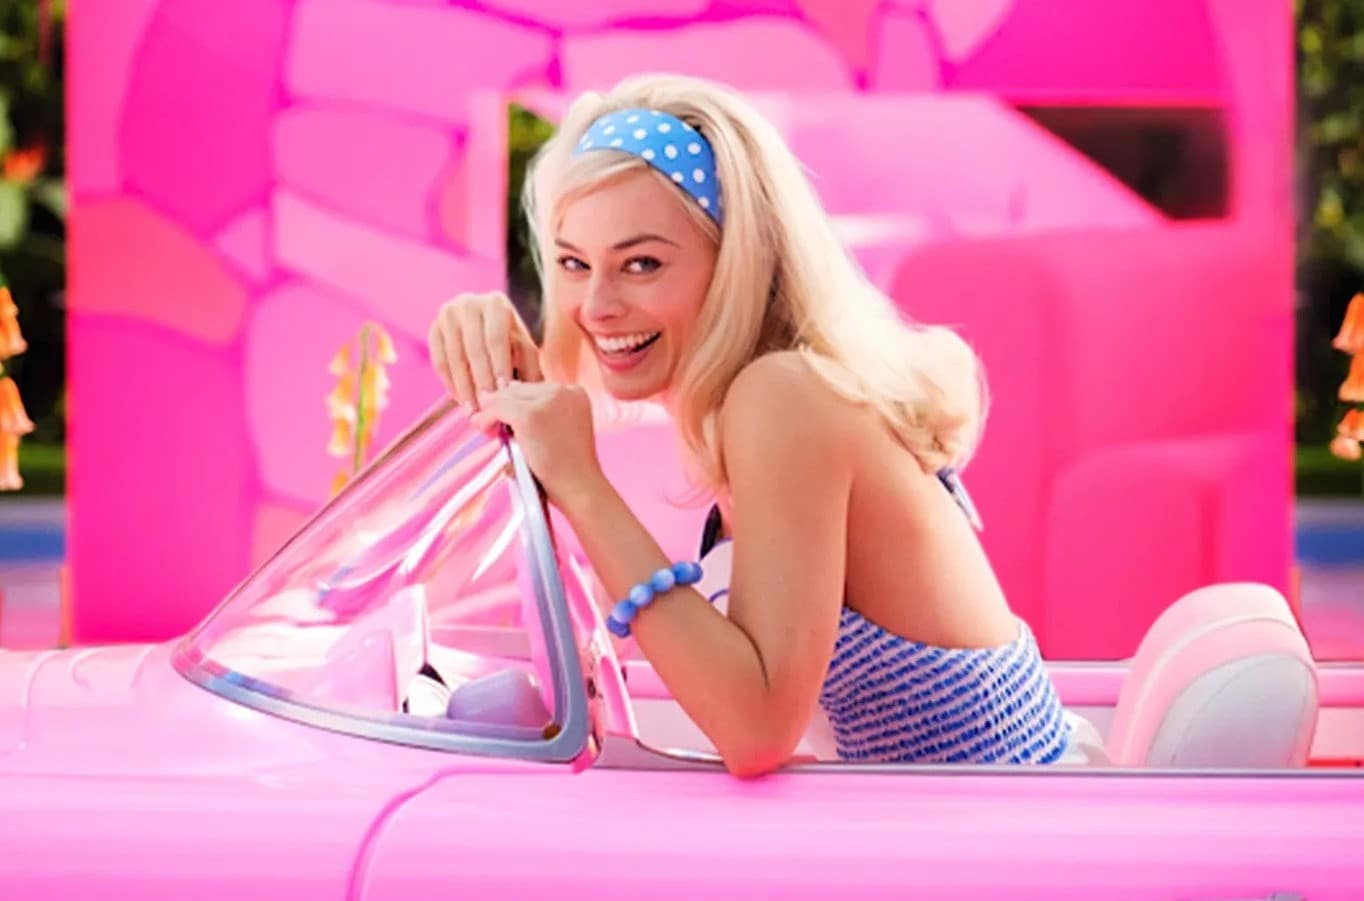 Produtos e cultura, o que faz de Barbie um fenômeno?